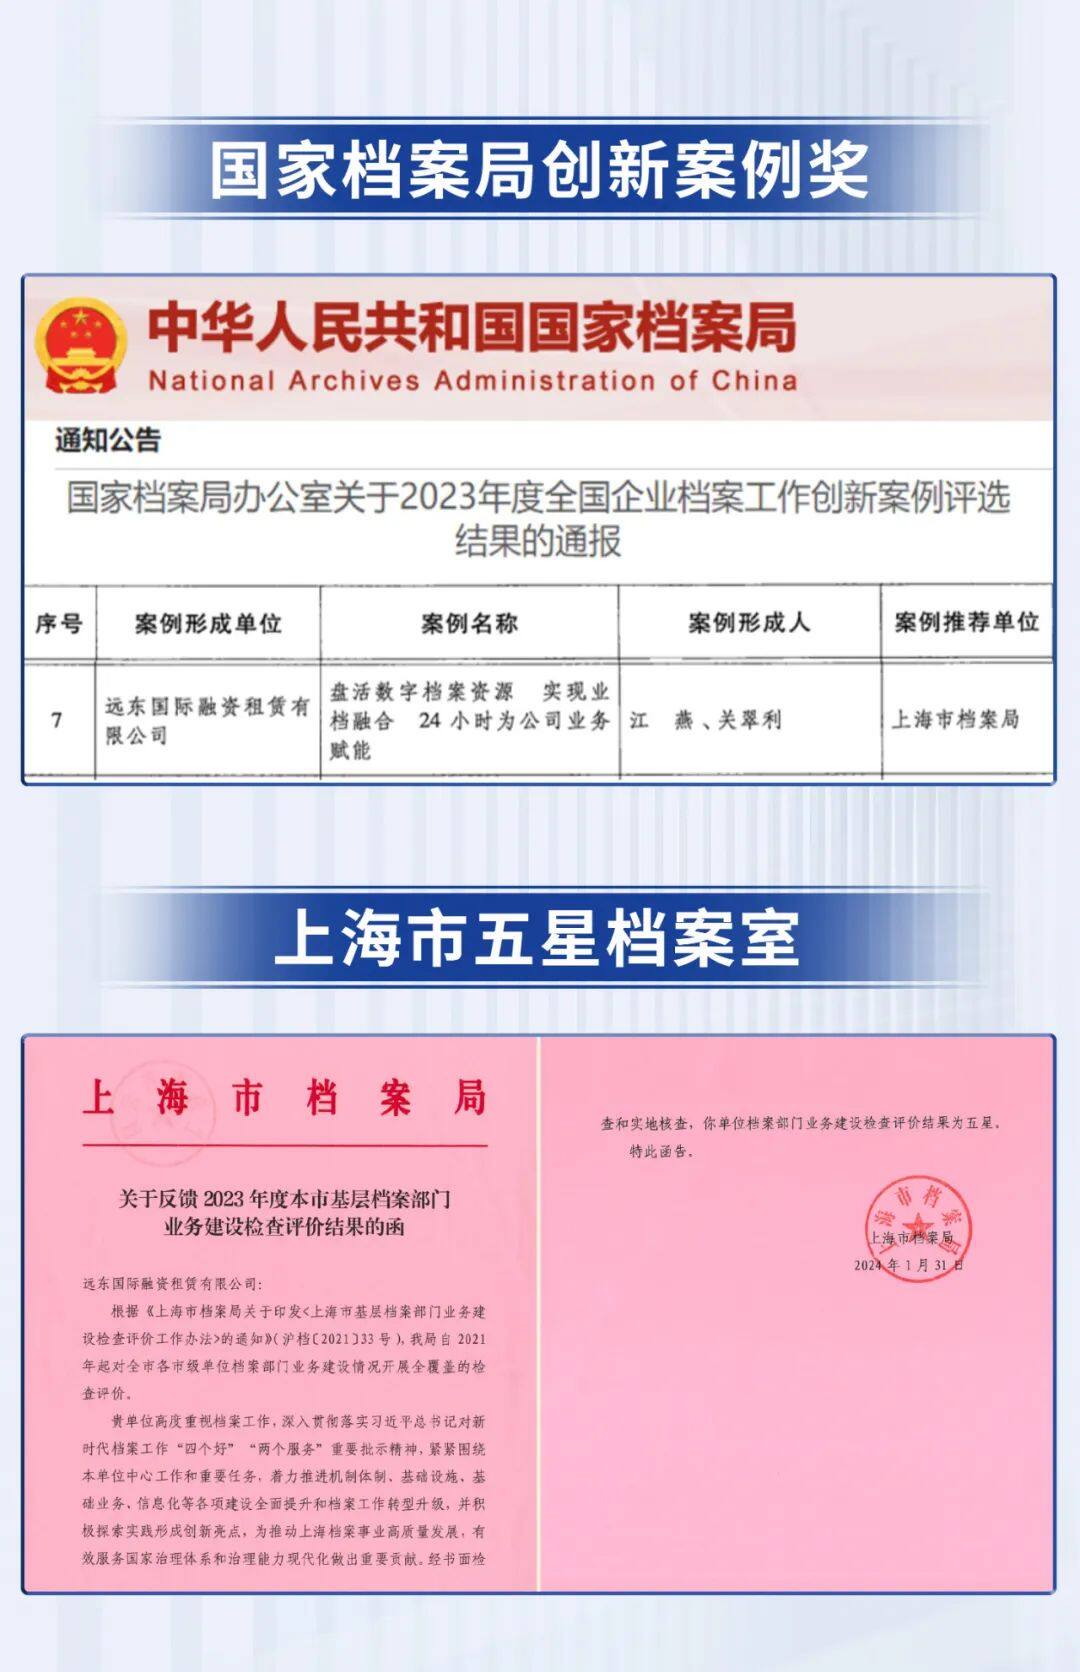 远东宏信租赁获国家档案局“立异案例”、上海市档案局“五星档案室”称谓